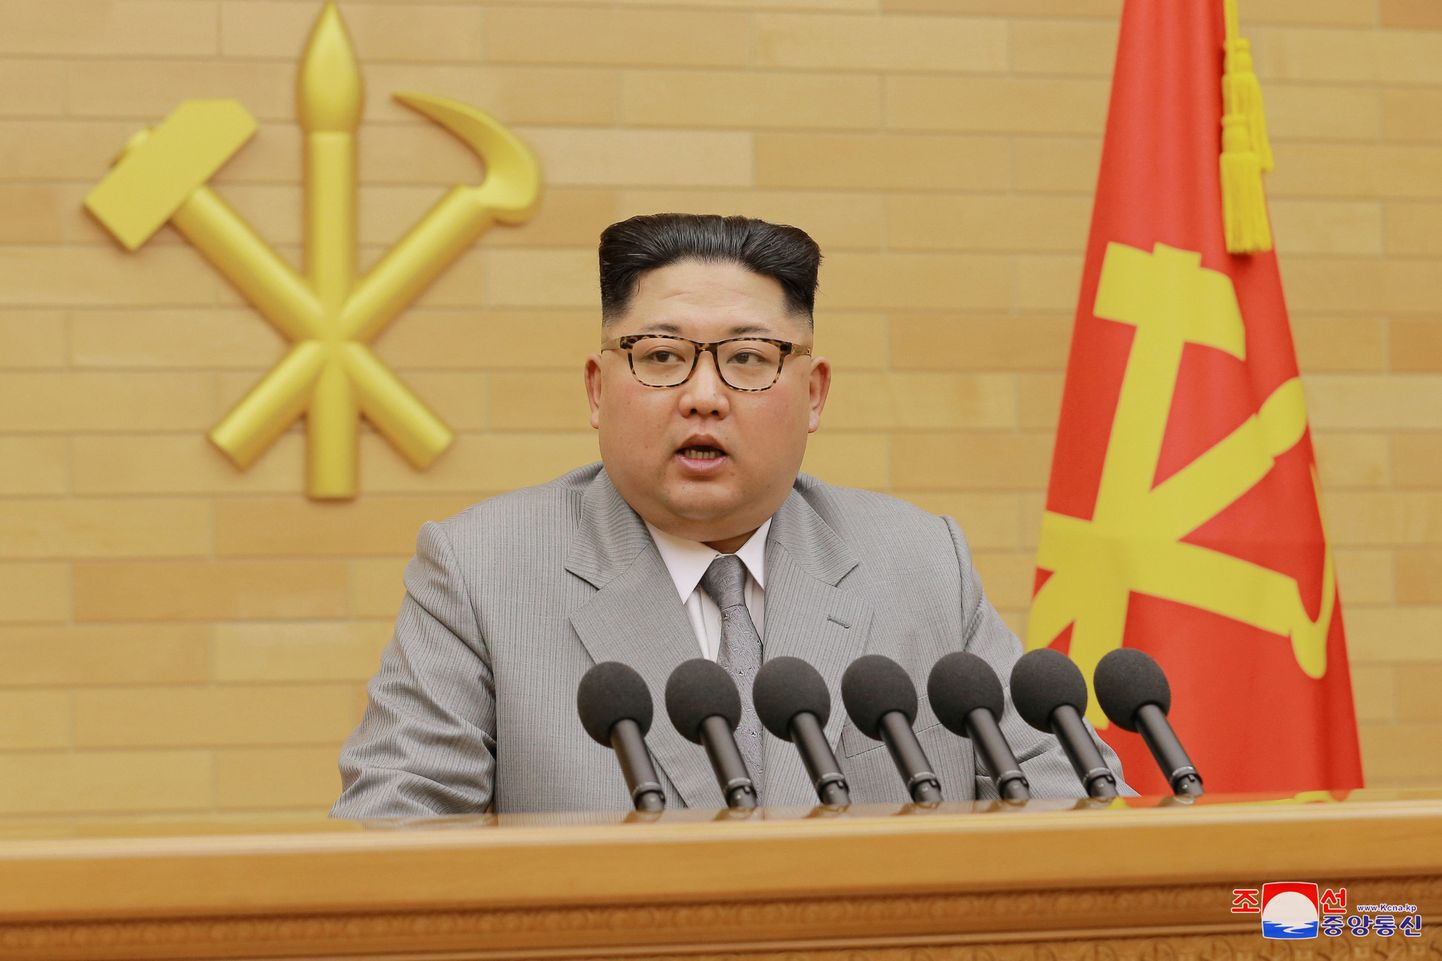 Põhja-Korea liider Kim Jong-un teatas rahvale, et riigi koondis osaleb olümpiamängudel. Vaid üks pisiasi: enne tuleb sinna ka kvalifitseeruda...